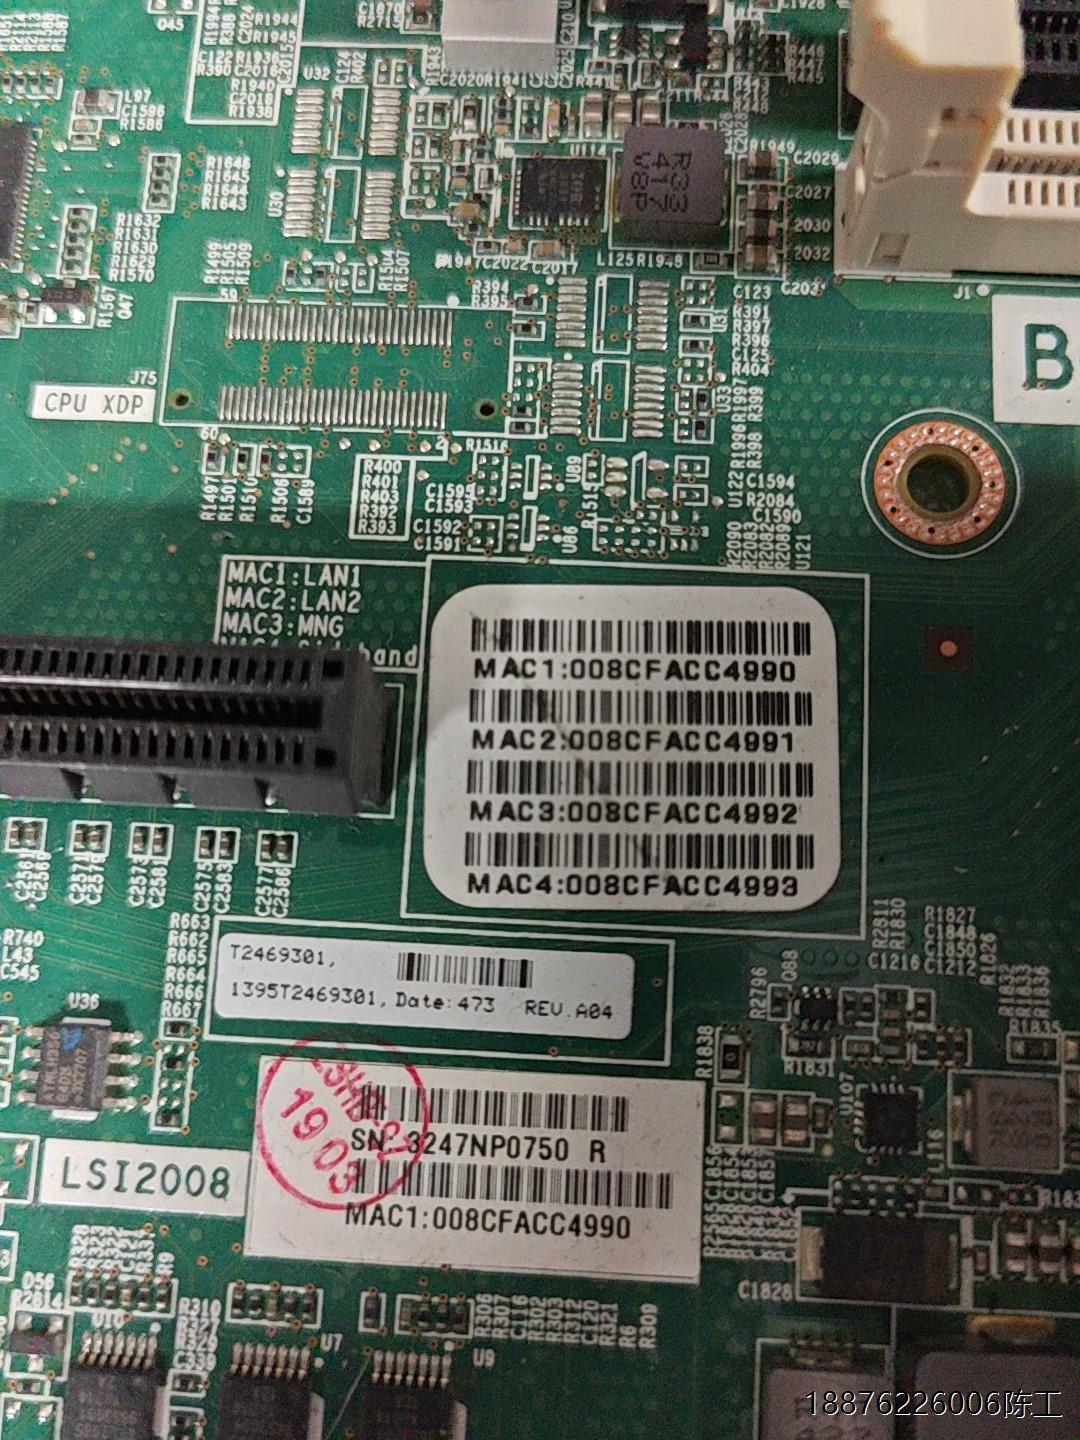 英业达 B600_1G主板带两颗 E5 2407 CPU以